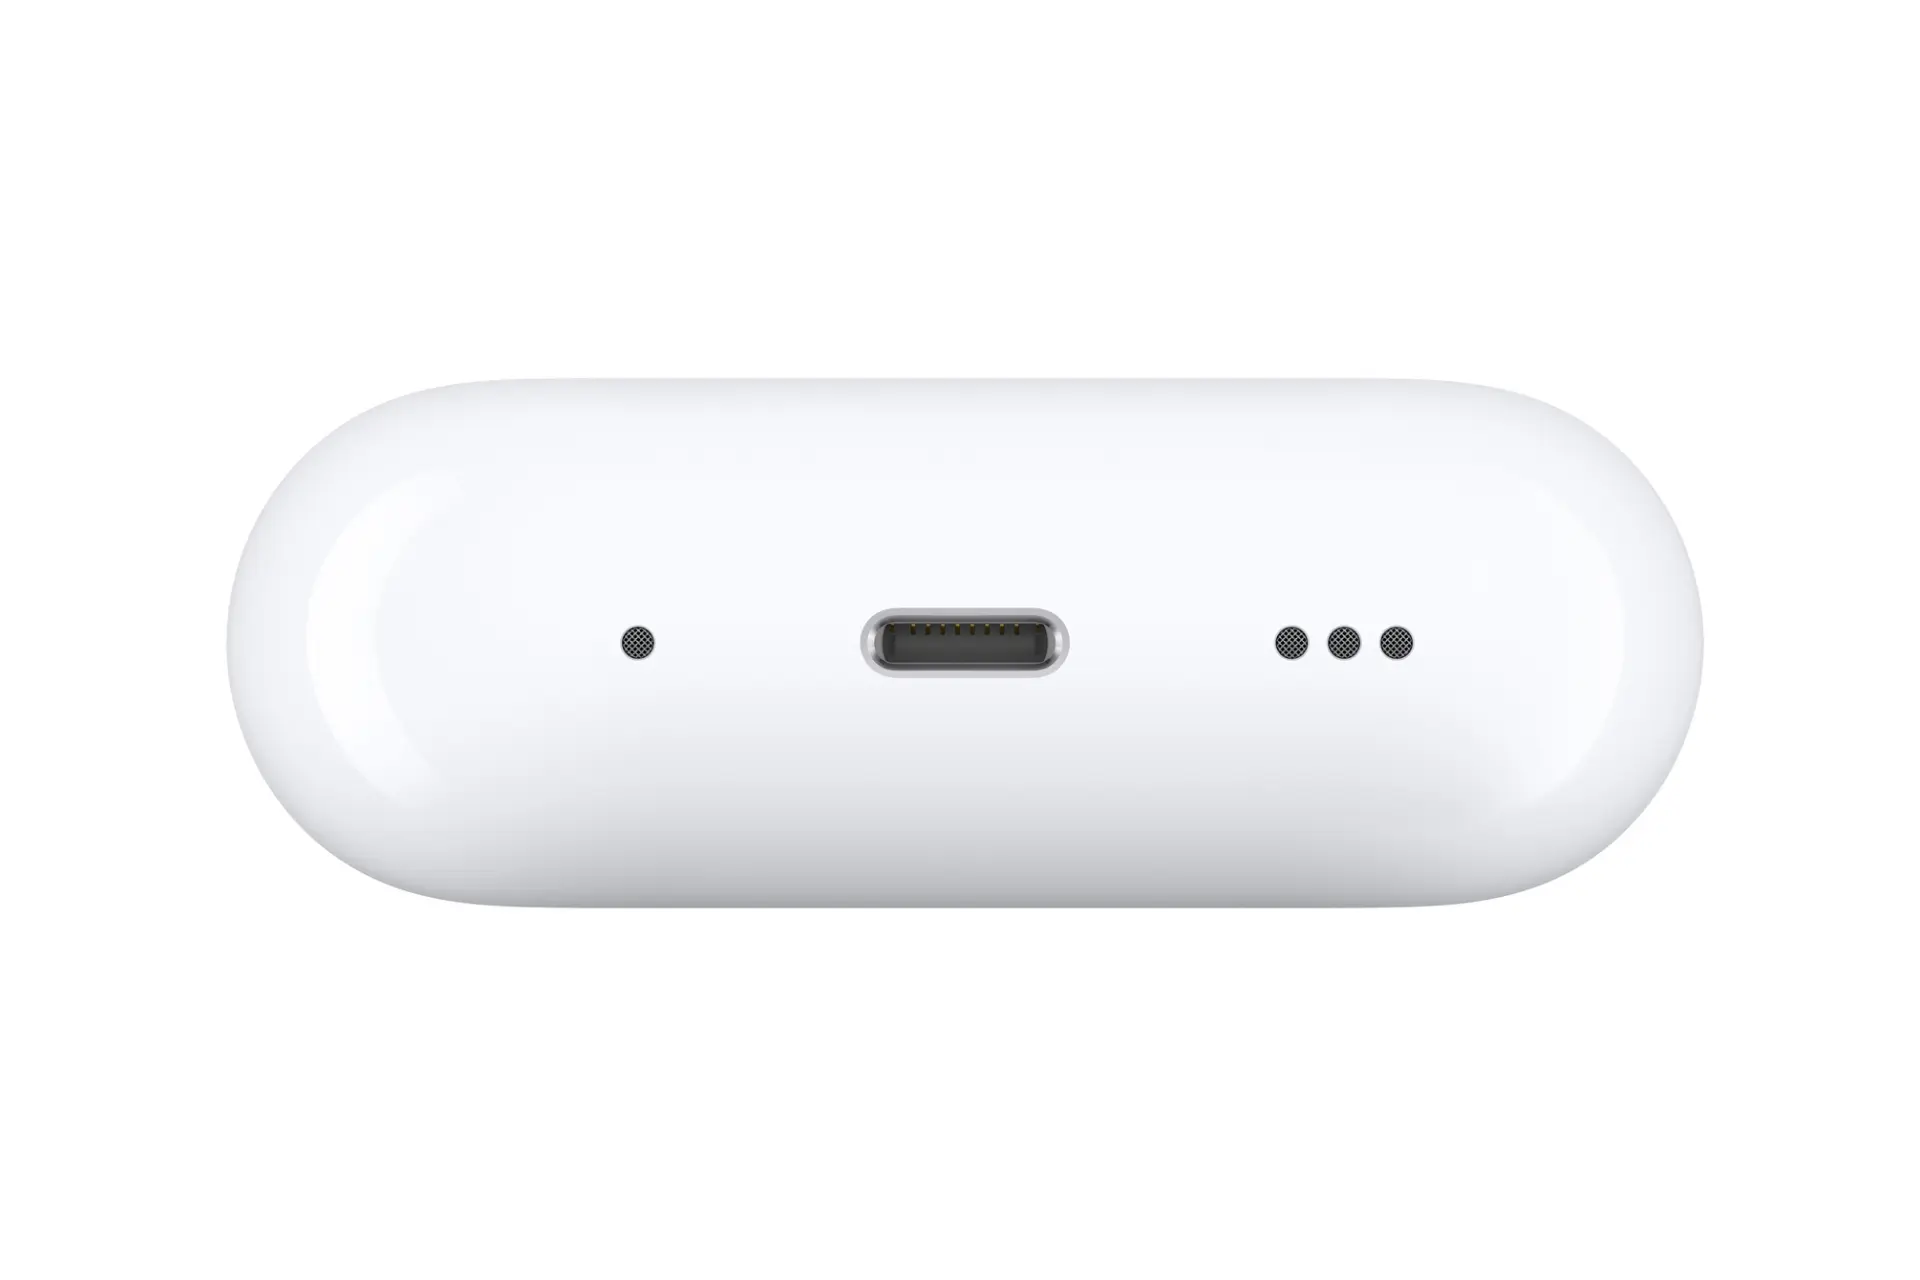 درگاه شارژ هدفون اپل ایرپاد پرو نسل دوم Apple AirPods Pro (2nd Generation)